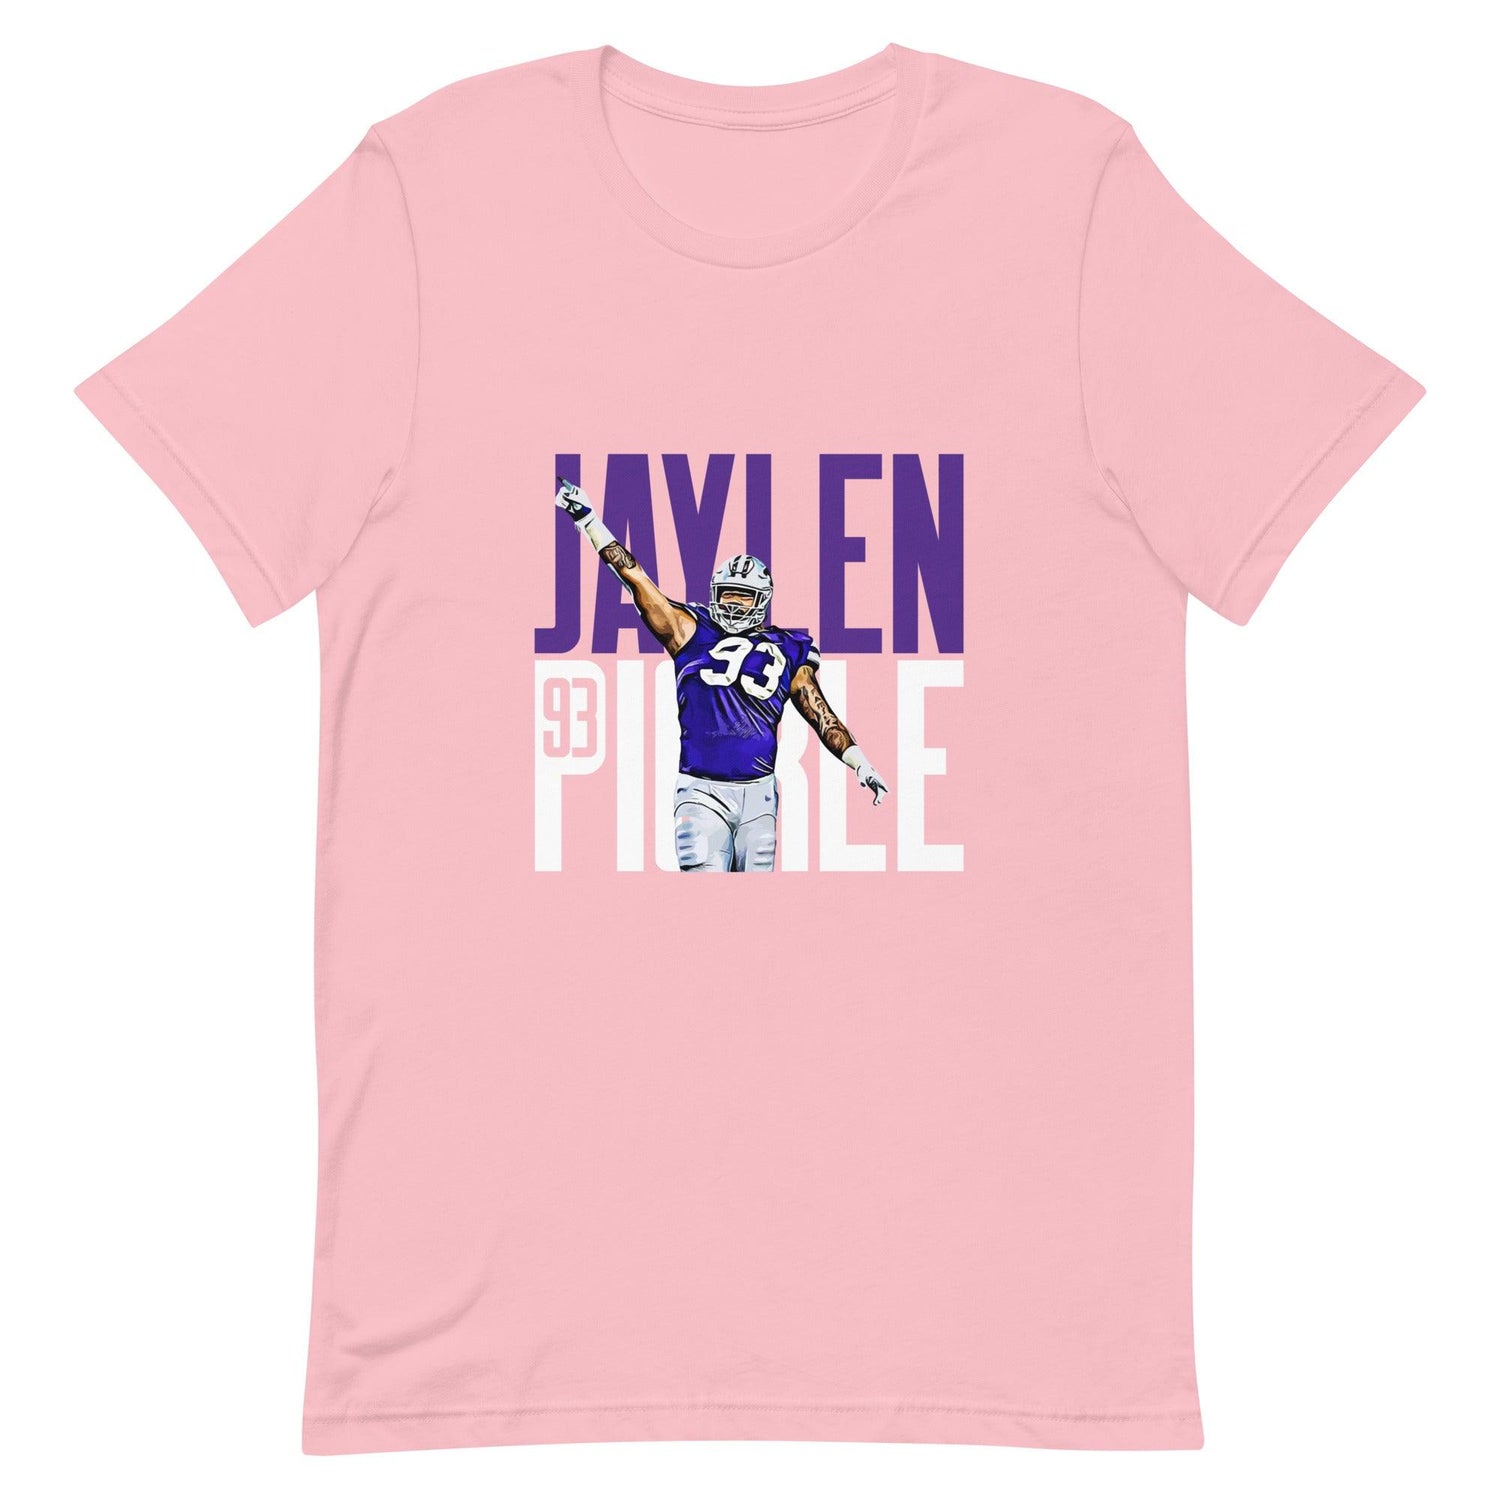 Jaylen Pickle "Gameday" t-shirt - Fan Arch